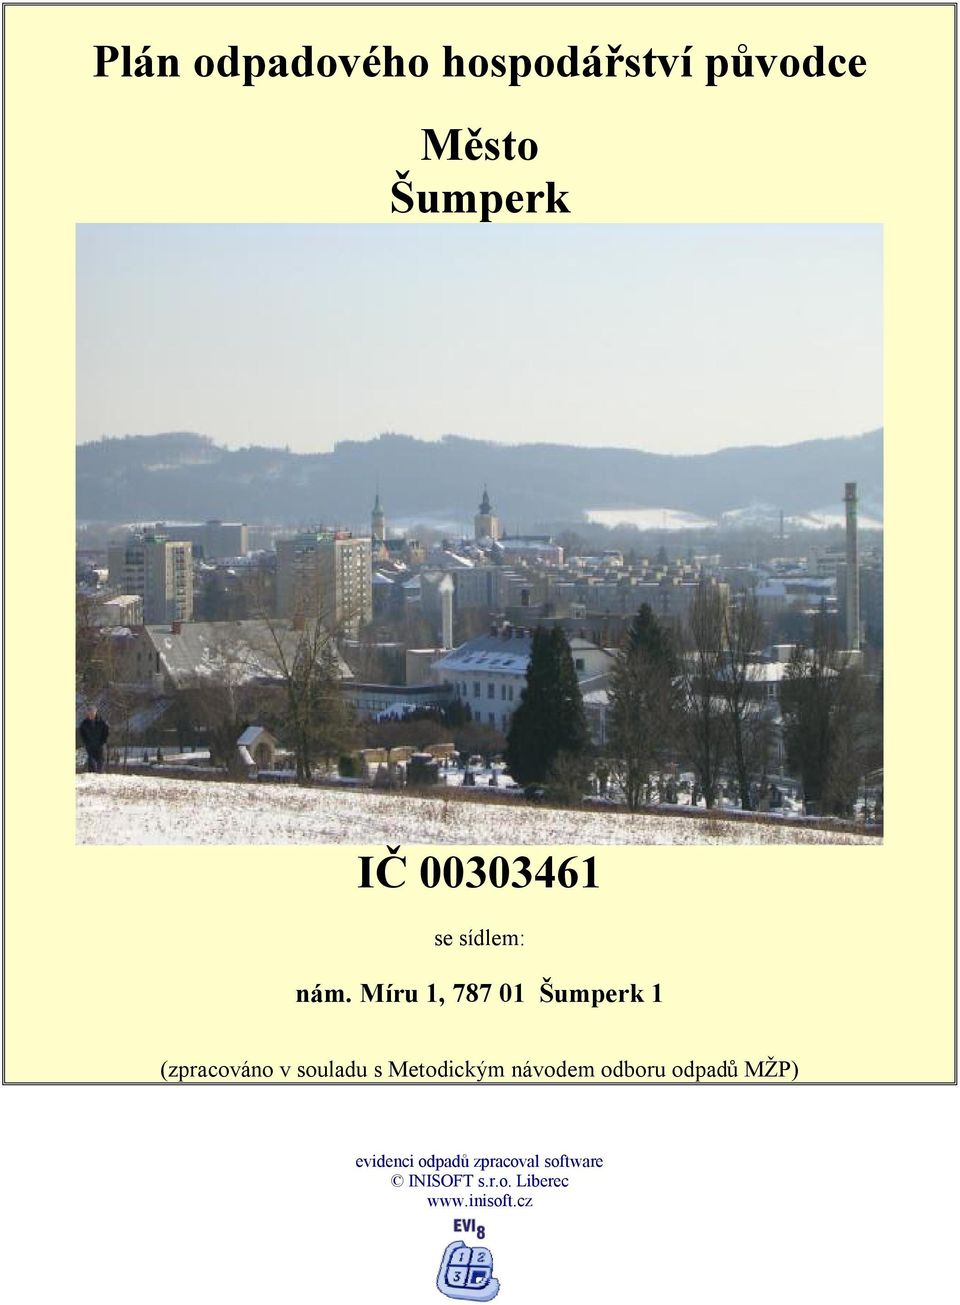 Míru 1, 787 01 Šumperk 1 (zpracováno v souladu s Metodickým